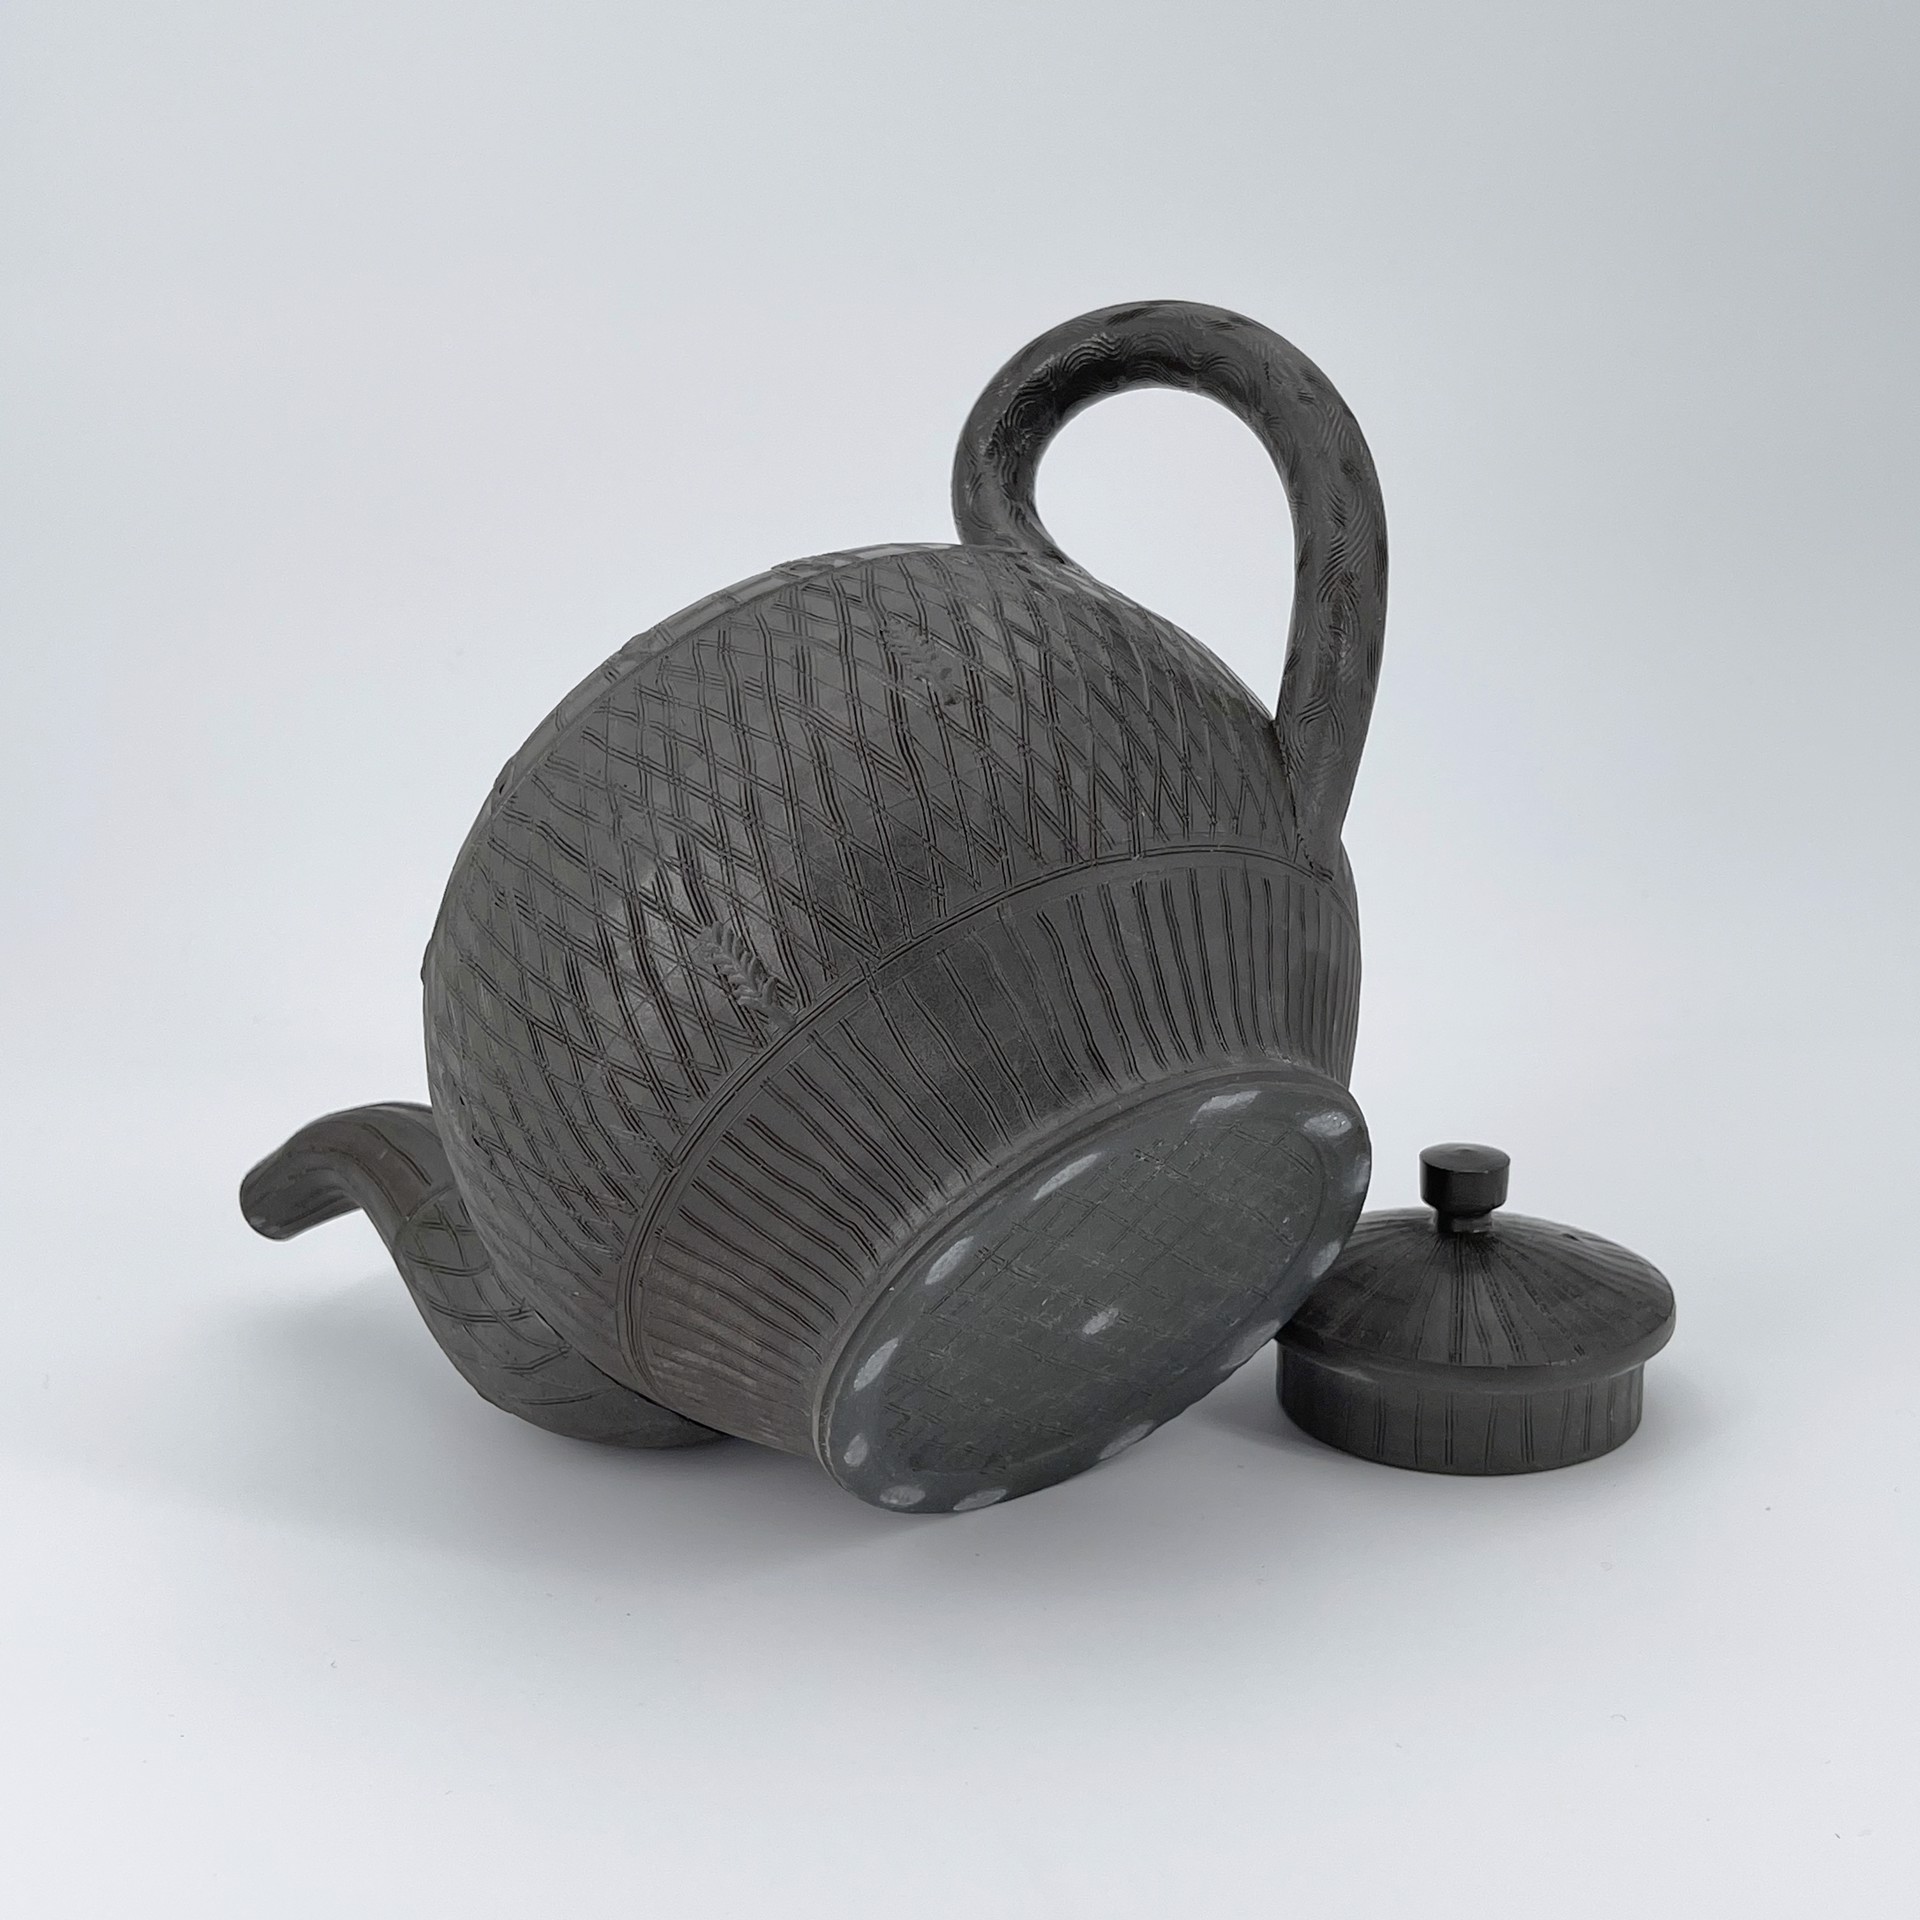 Teapots - Black – POJ Studio